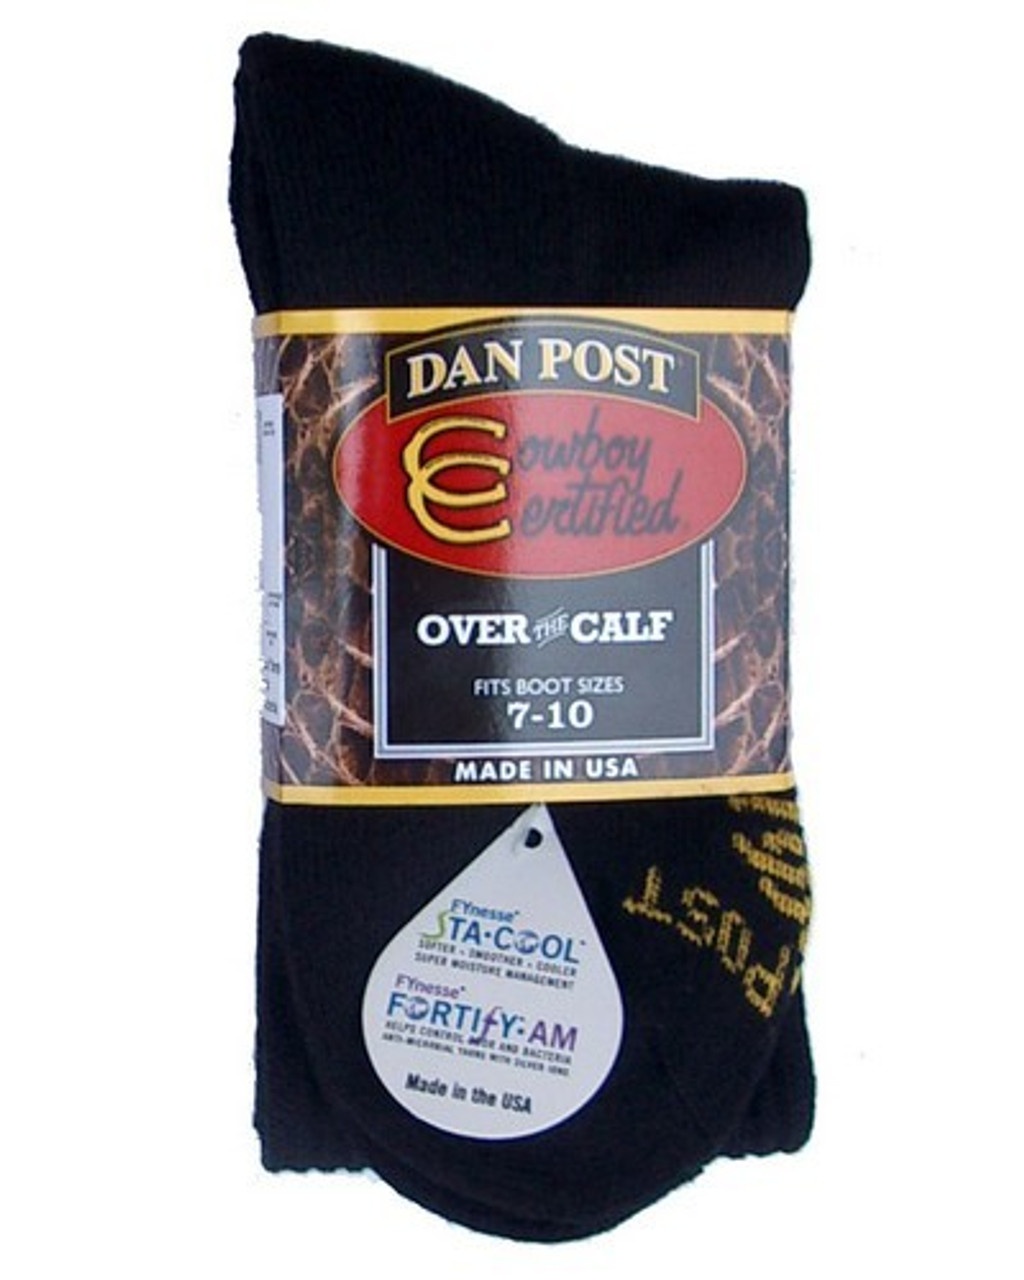 dan post cowboy certified over the calf socks